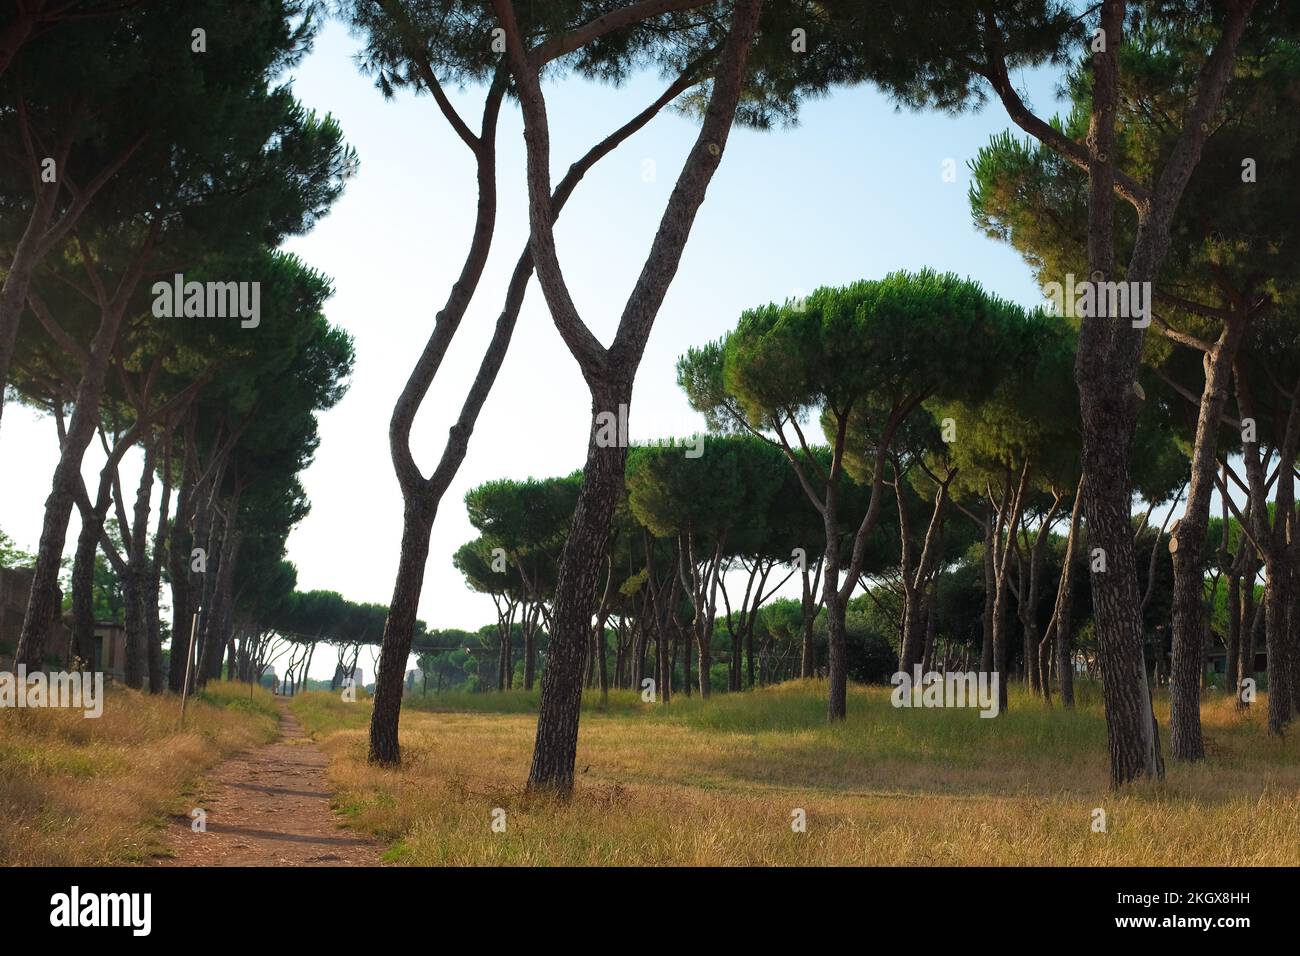 Alto e bellissimo Pineto italiano nel Parco degli Acquedotti, un parco pubblico di acquedotti a Roma. Gruppo di alberi mediterranei con alto baldacchino. Foto Stock